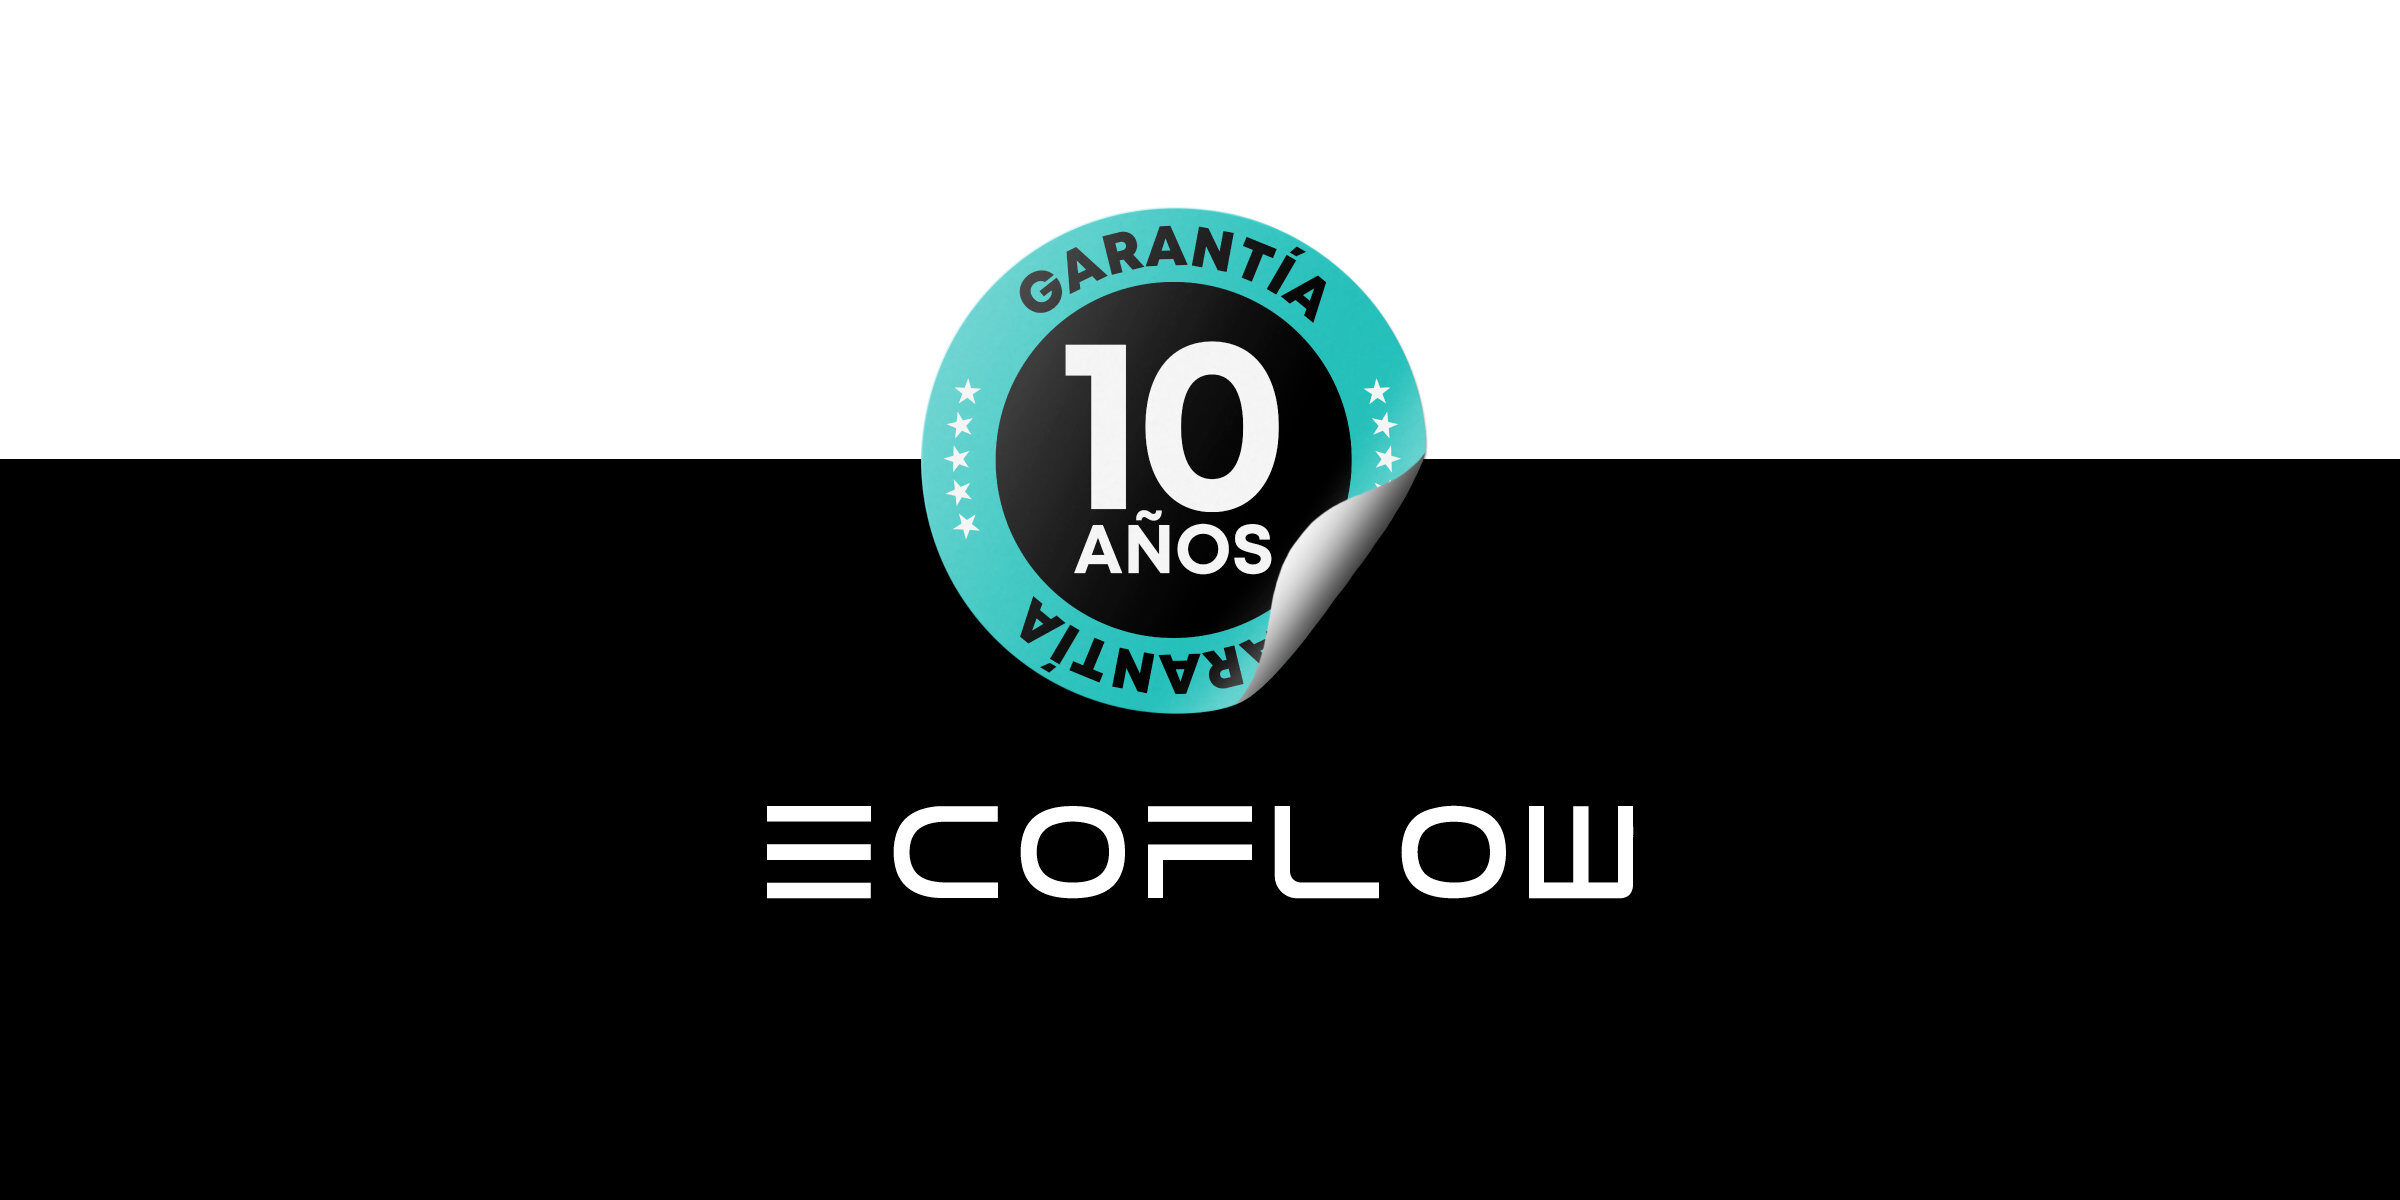 Batería EcoFlow con Garantía de 10 años - Energía confiable para la próxima década